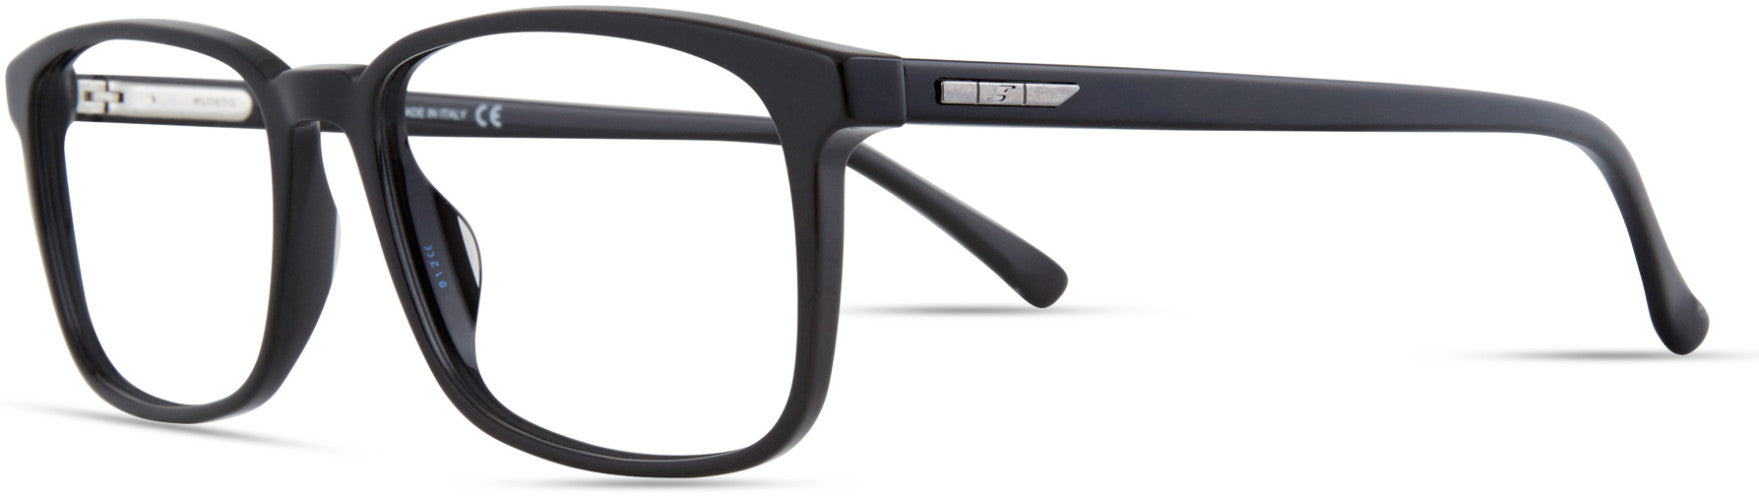  Elasta 1645 Rectangular Eyeglasses 0807-0807  Black (00 Demo Lens)